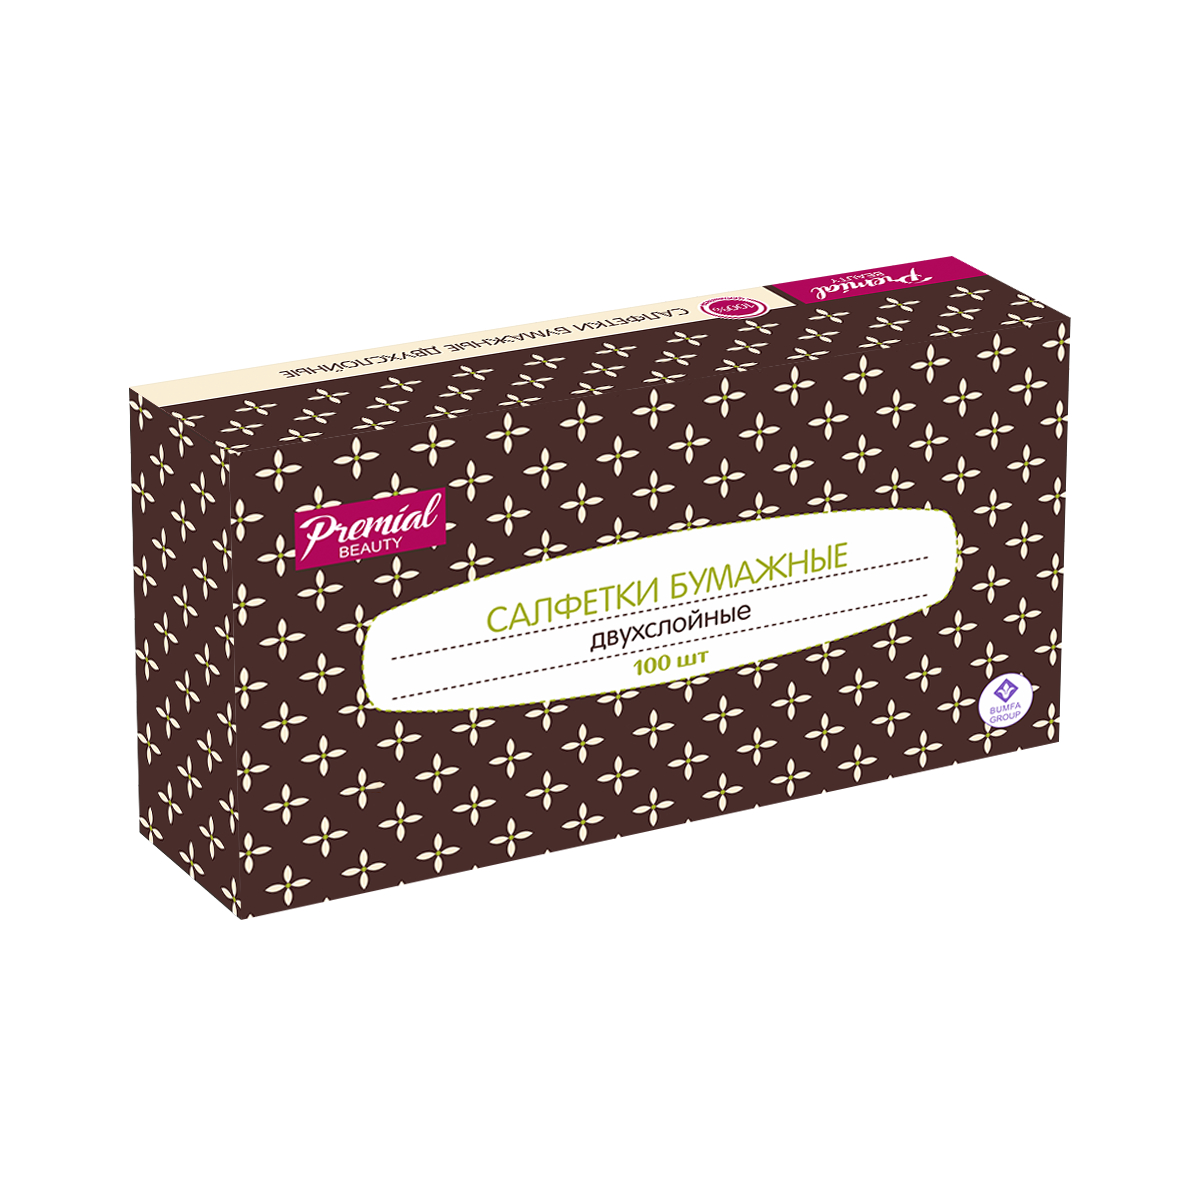 Салфетки косметические Premial 2-слойные в коробке нон-стоп, 100 шт косметические салфетки luscan